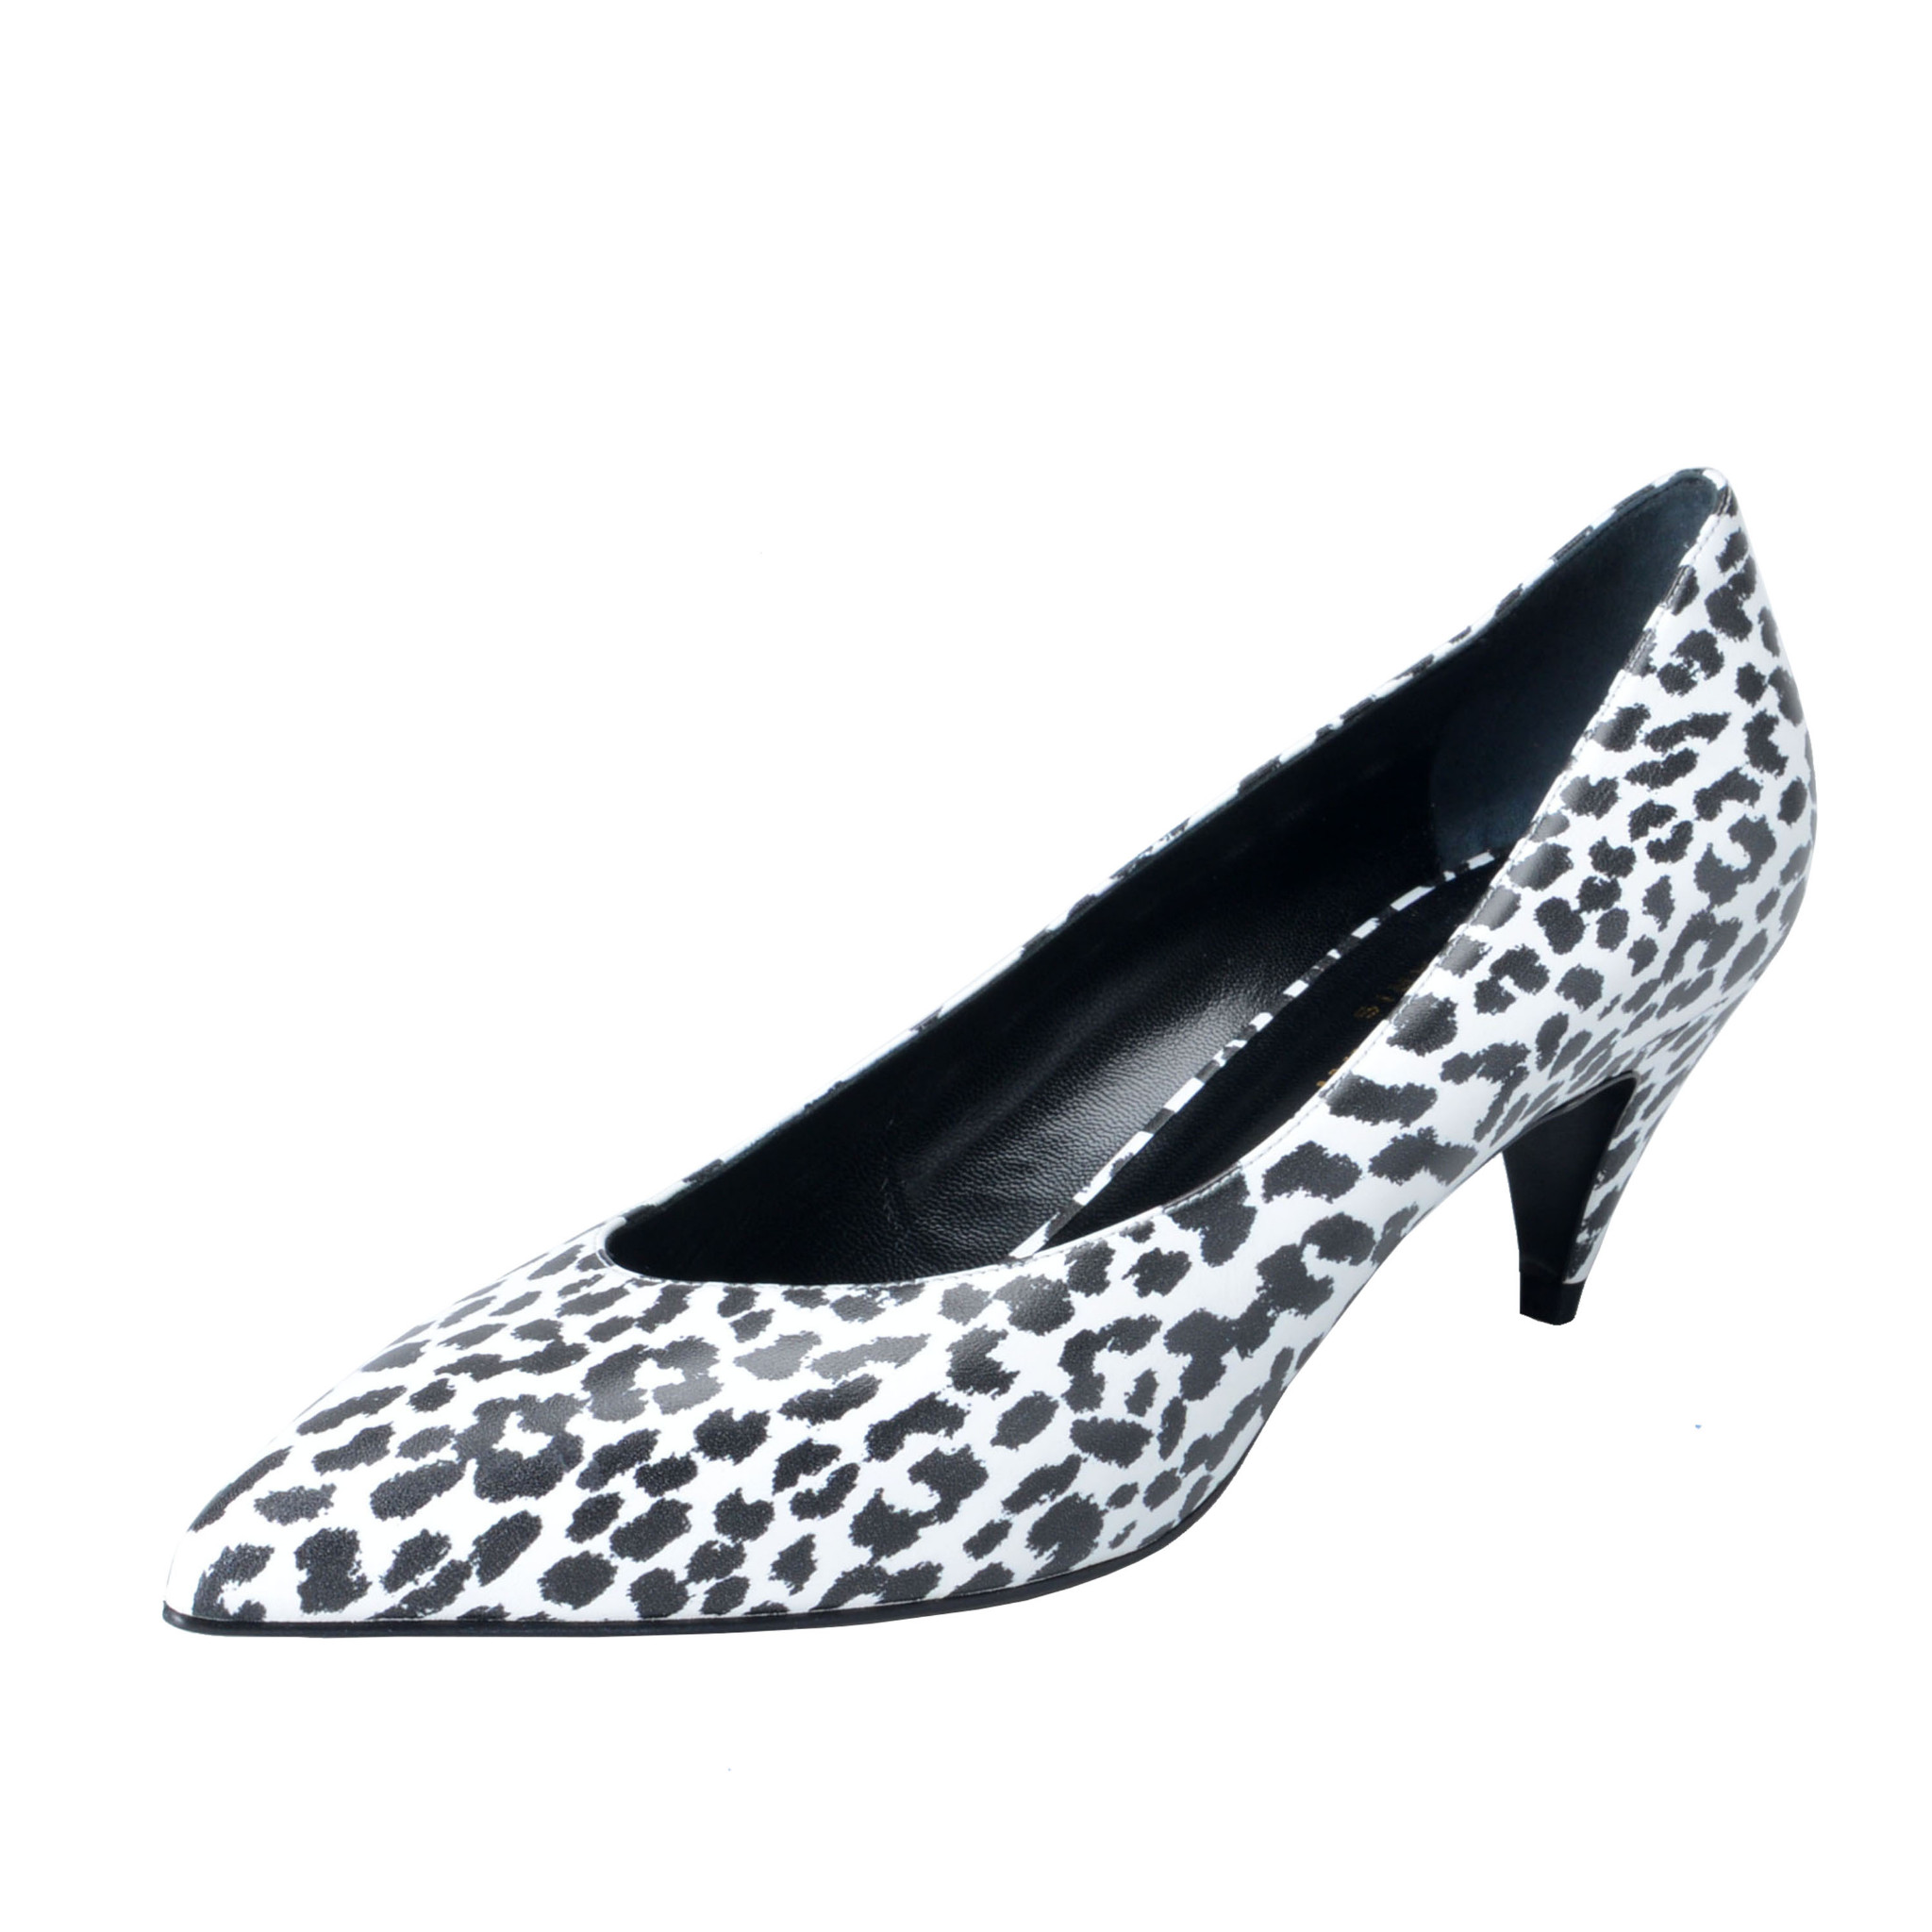 leopard skin kitten heels